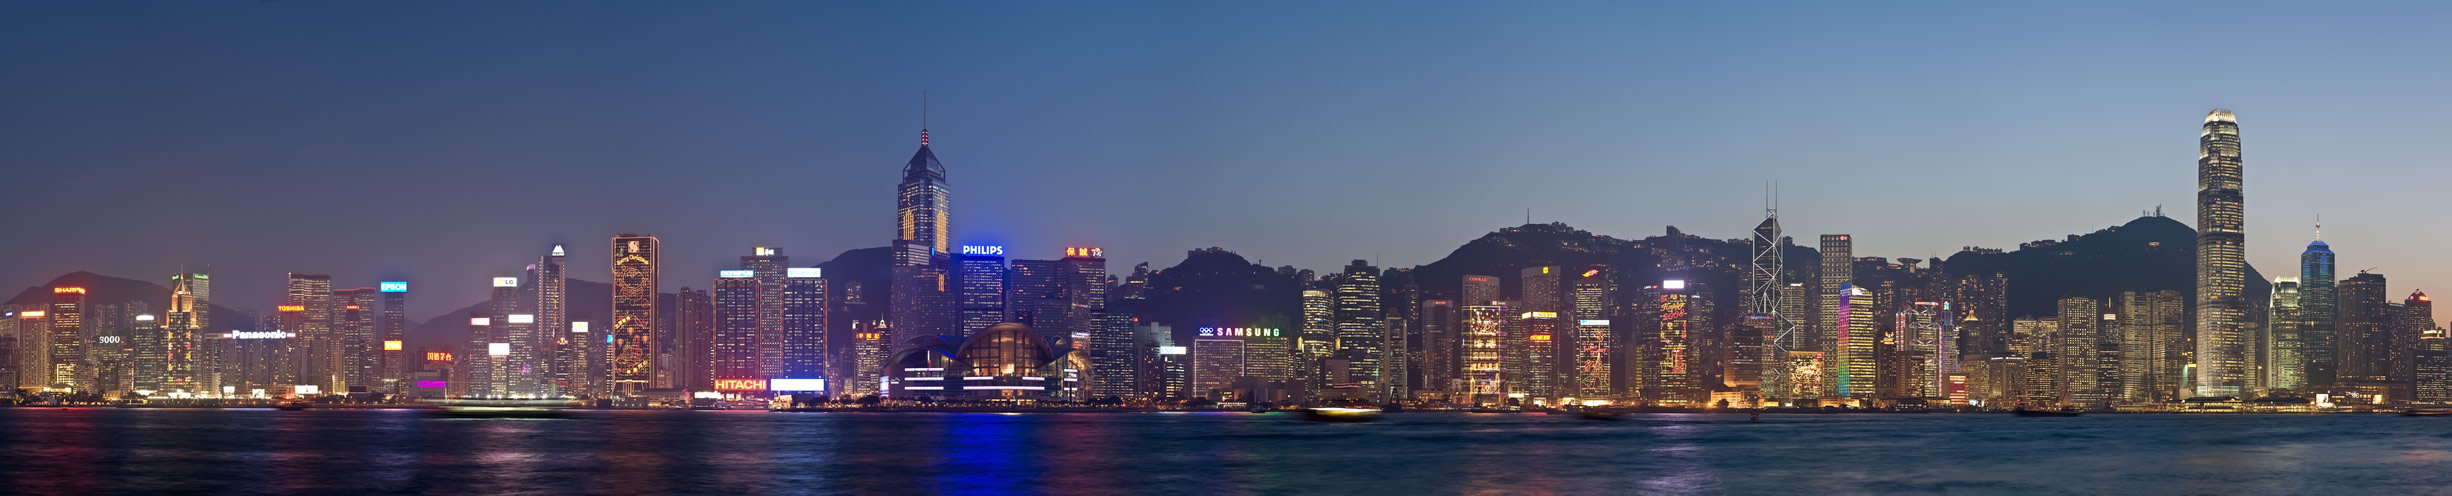 Hong Kong horizons